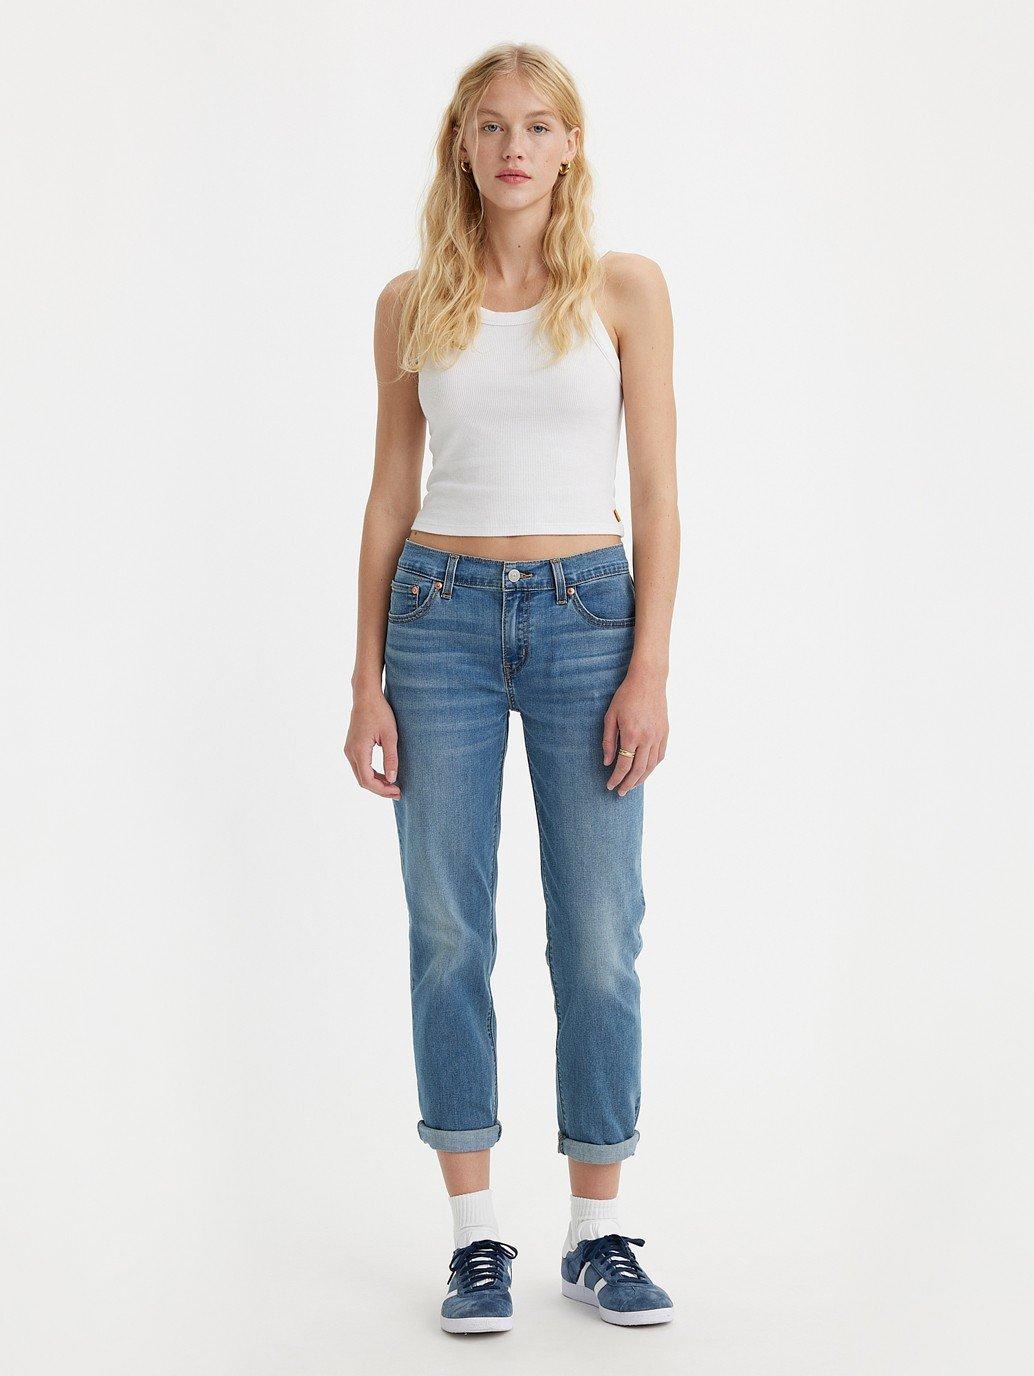 Buy Levi'S® Women'S Mid-Rise Boyfriend Jeans | Levi'S® Official Online  Store Ph